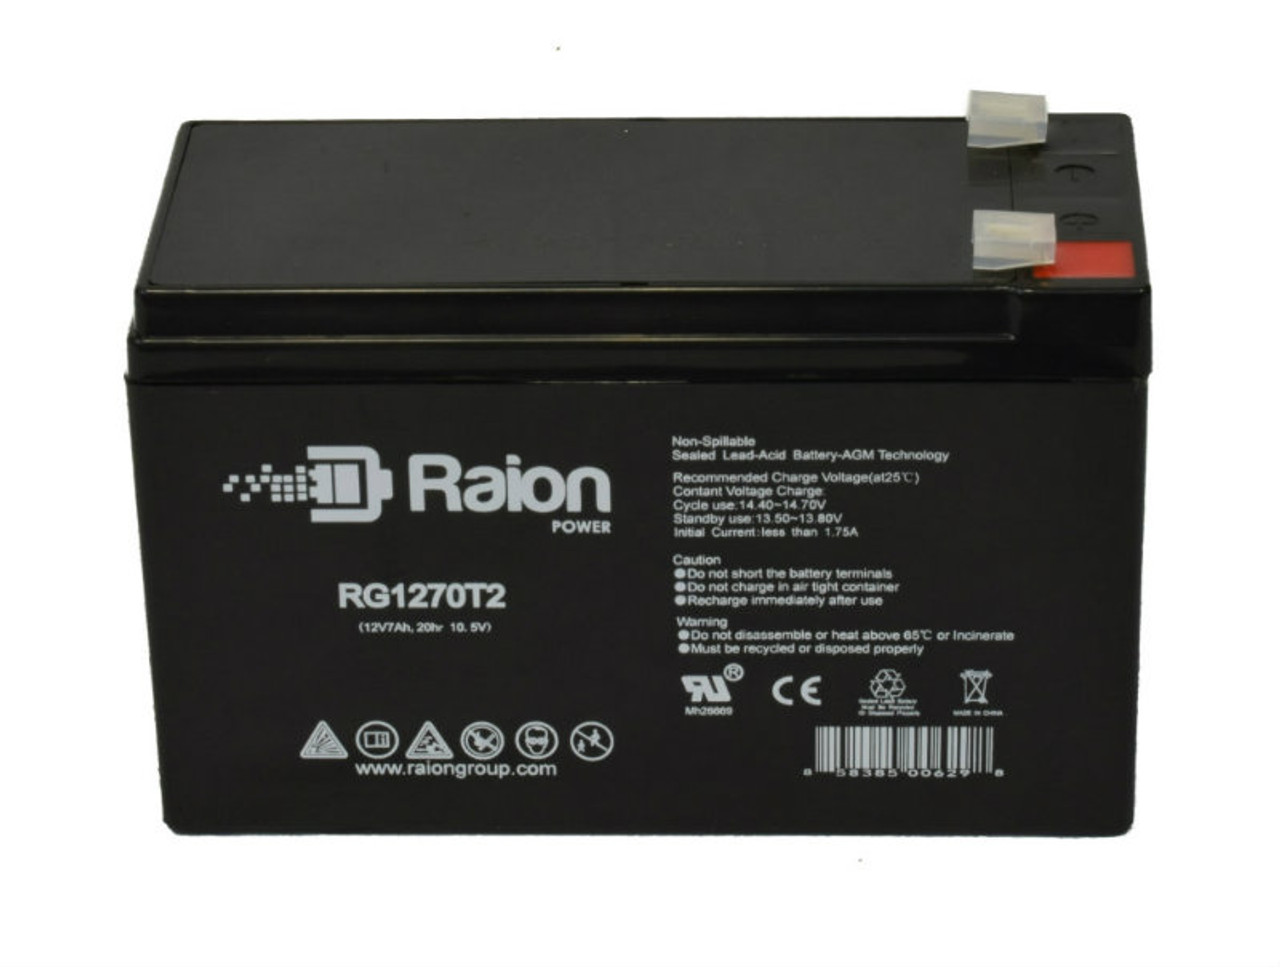 Raion Power RG1270T2 12V 7Ah Lead Acid Battery for Stannah Model 300 Stairlift